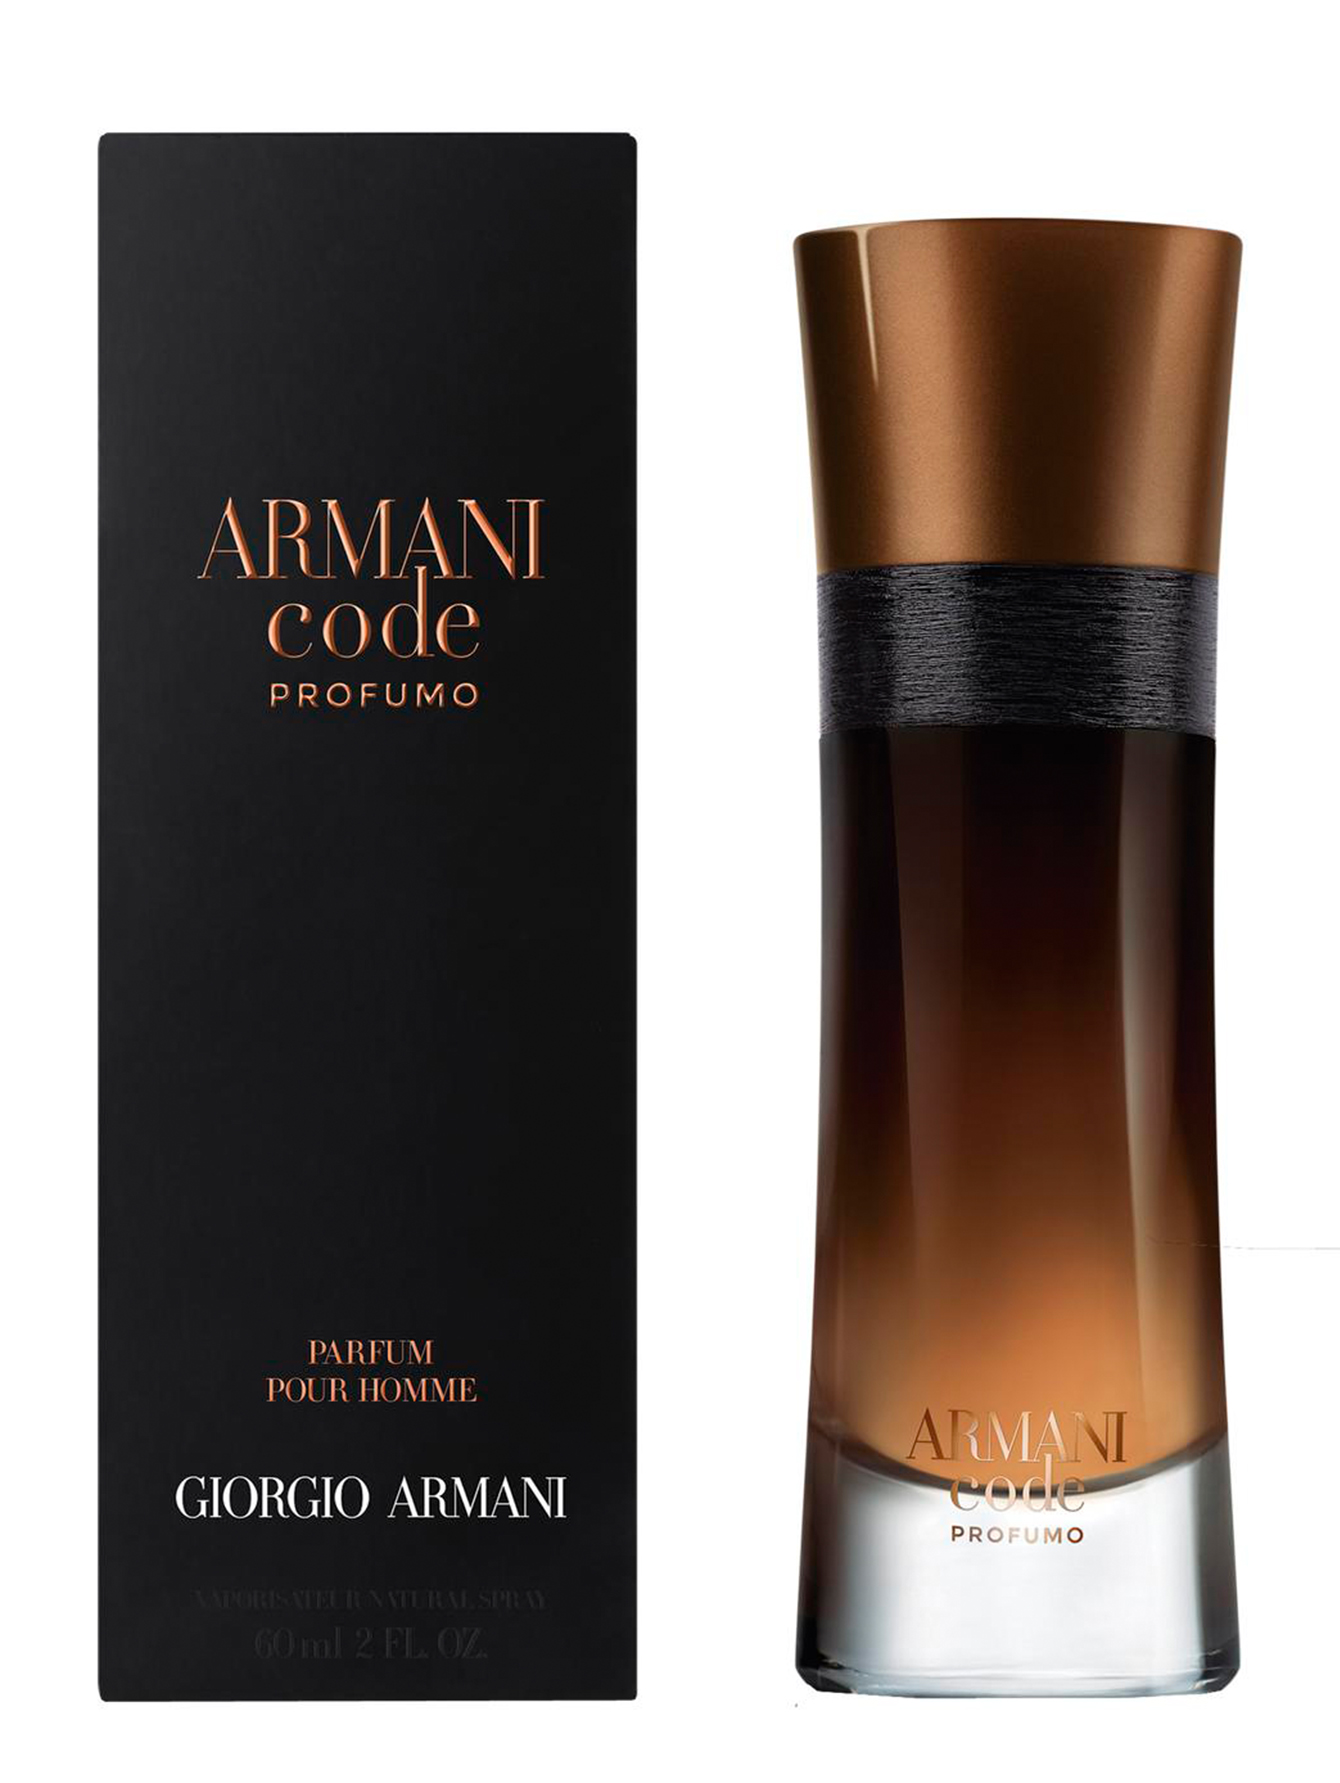 Армани мужские ароматы. Giorgio Armani Armani code. Armani code Parfum. Armani code Perfume. Духи Giorgio Armani Armani code.